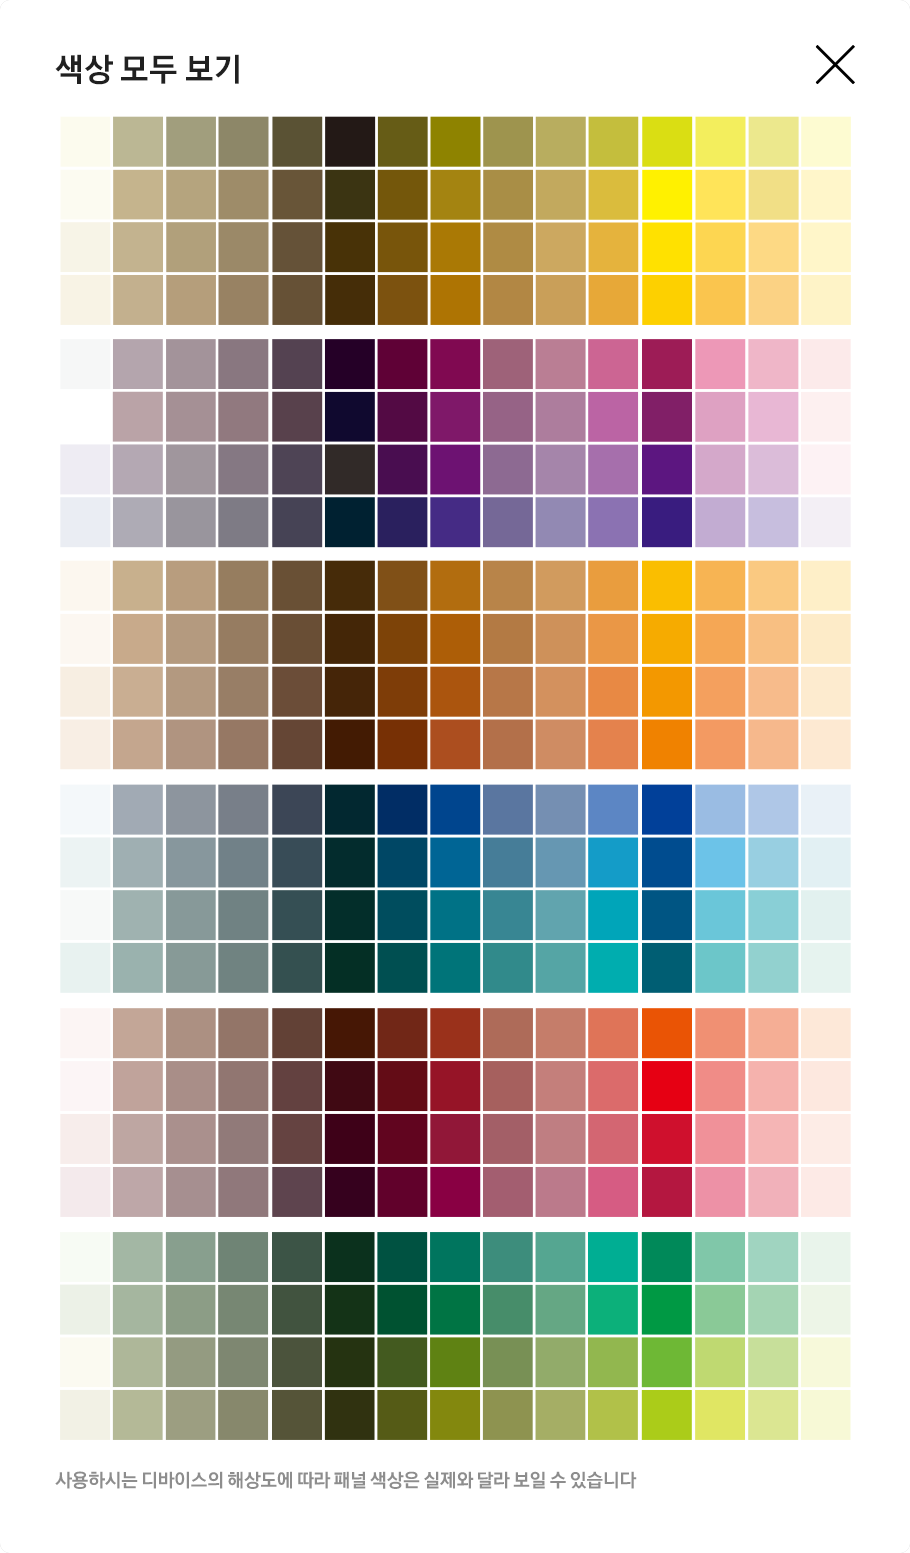 색상 모두 보기. Yellow, Orange, Red, Purple, Blue, Green 각 60개씩 360개 색상 팔레트가 보입니다. 사용하시는 디바이스의 해상도에 따라 패널 색상은 실제와 달라 보일 수 있습니다.